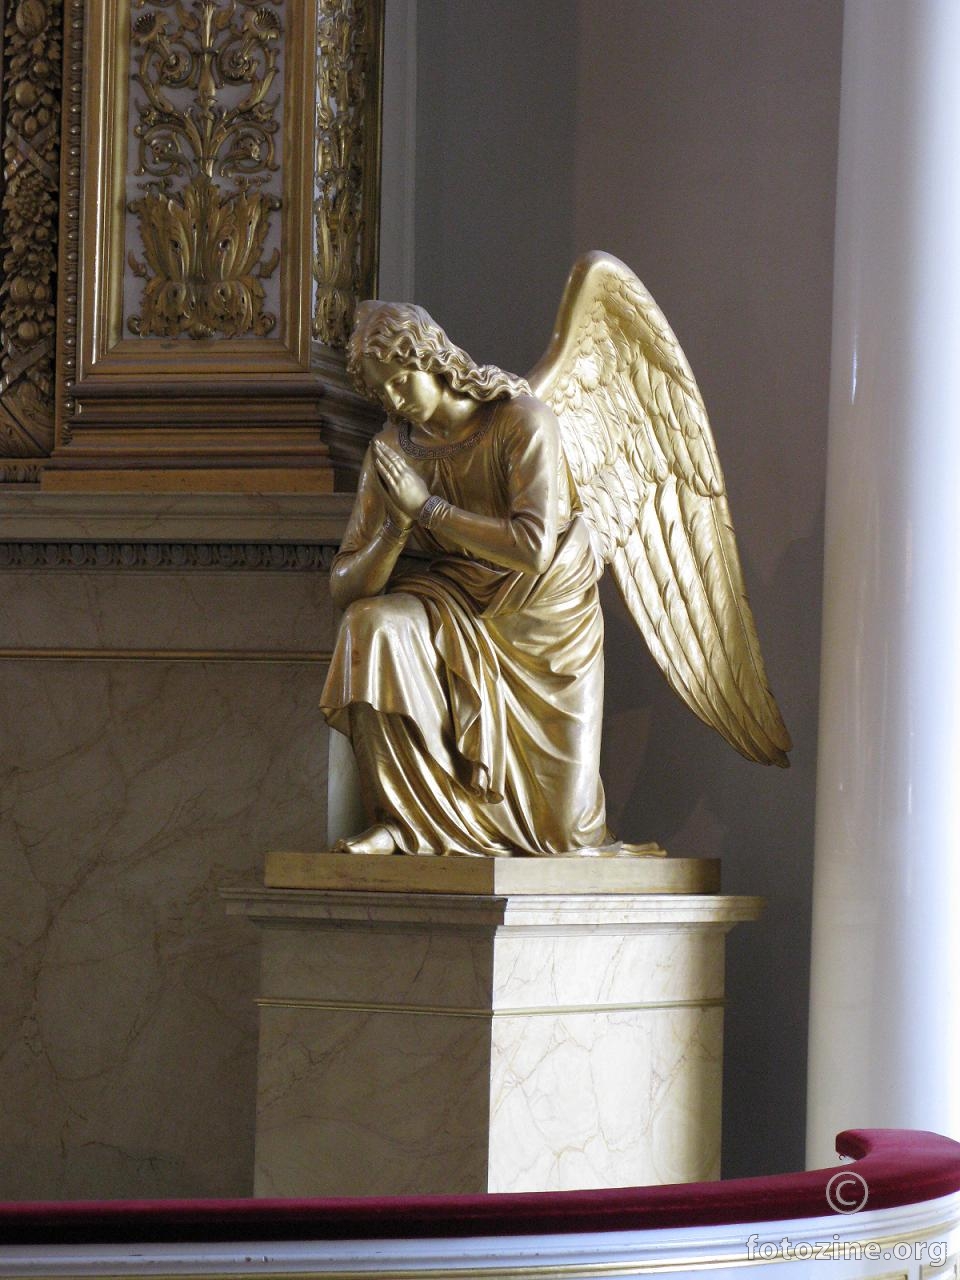 Helsinki's Angel